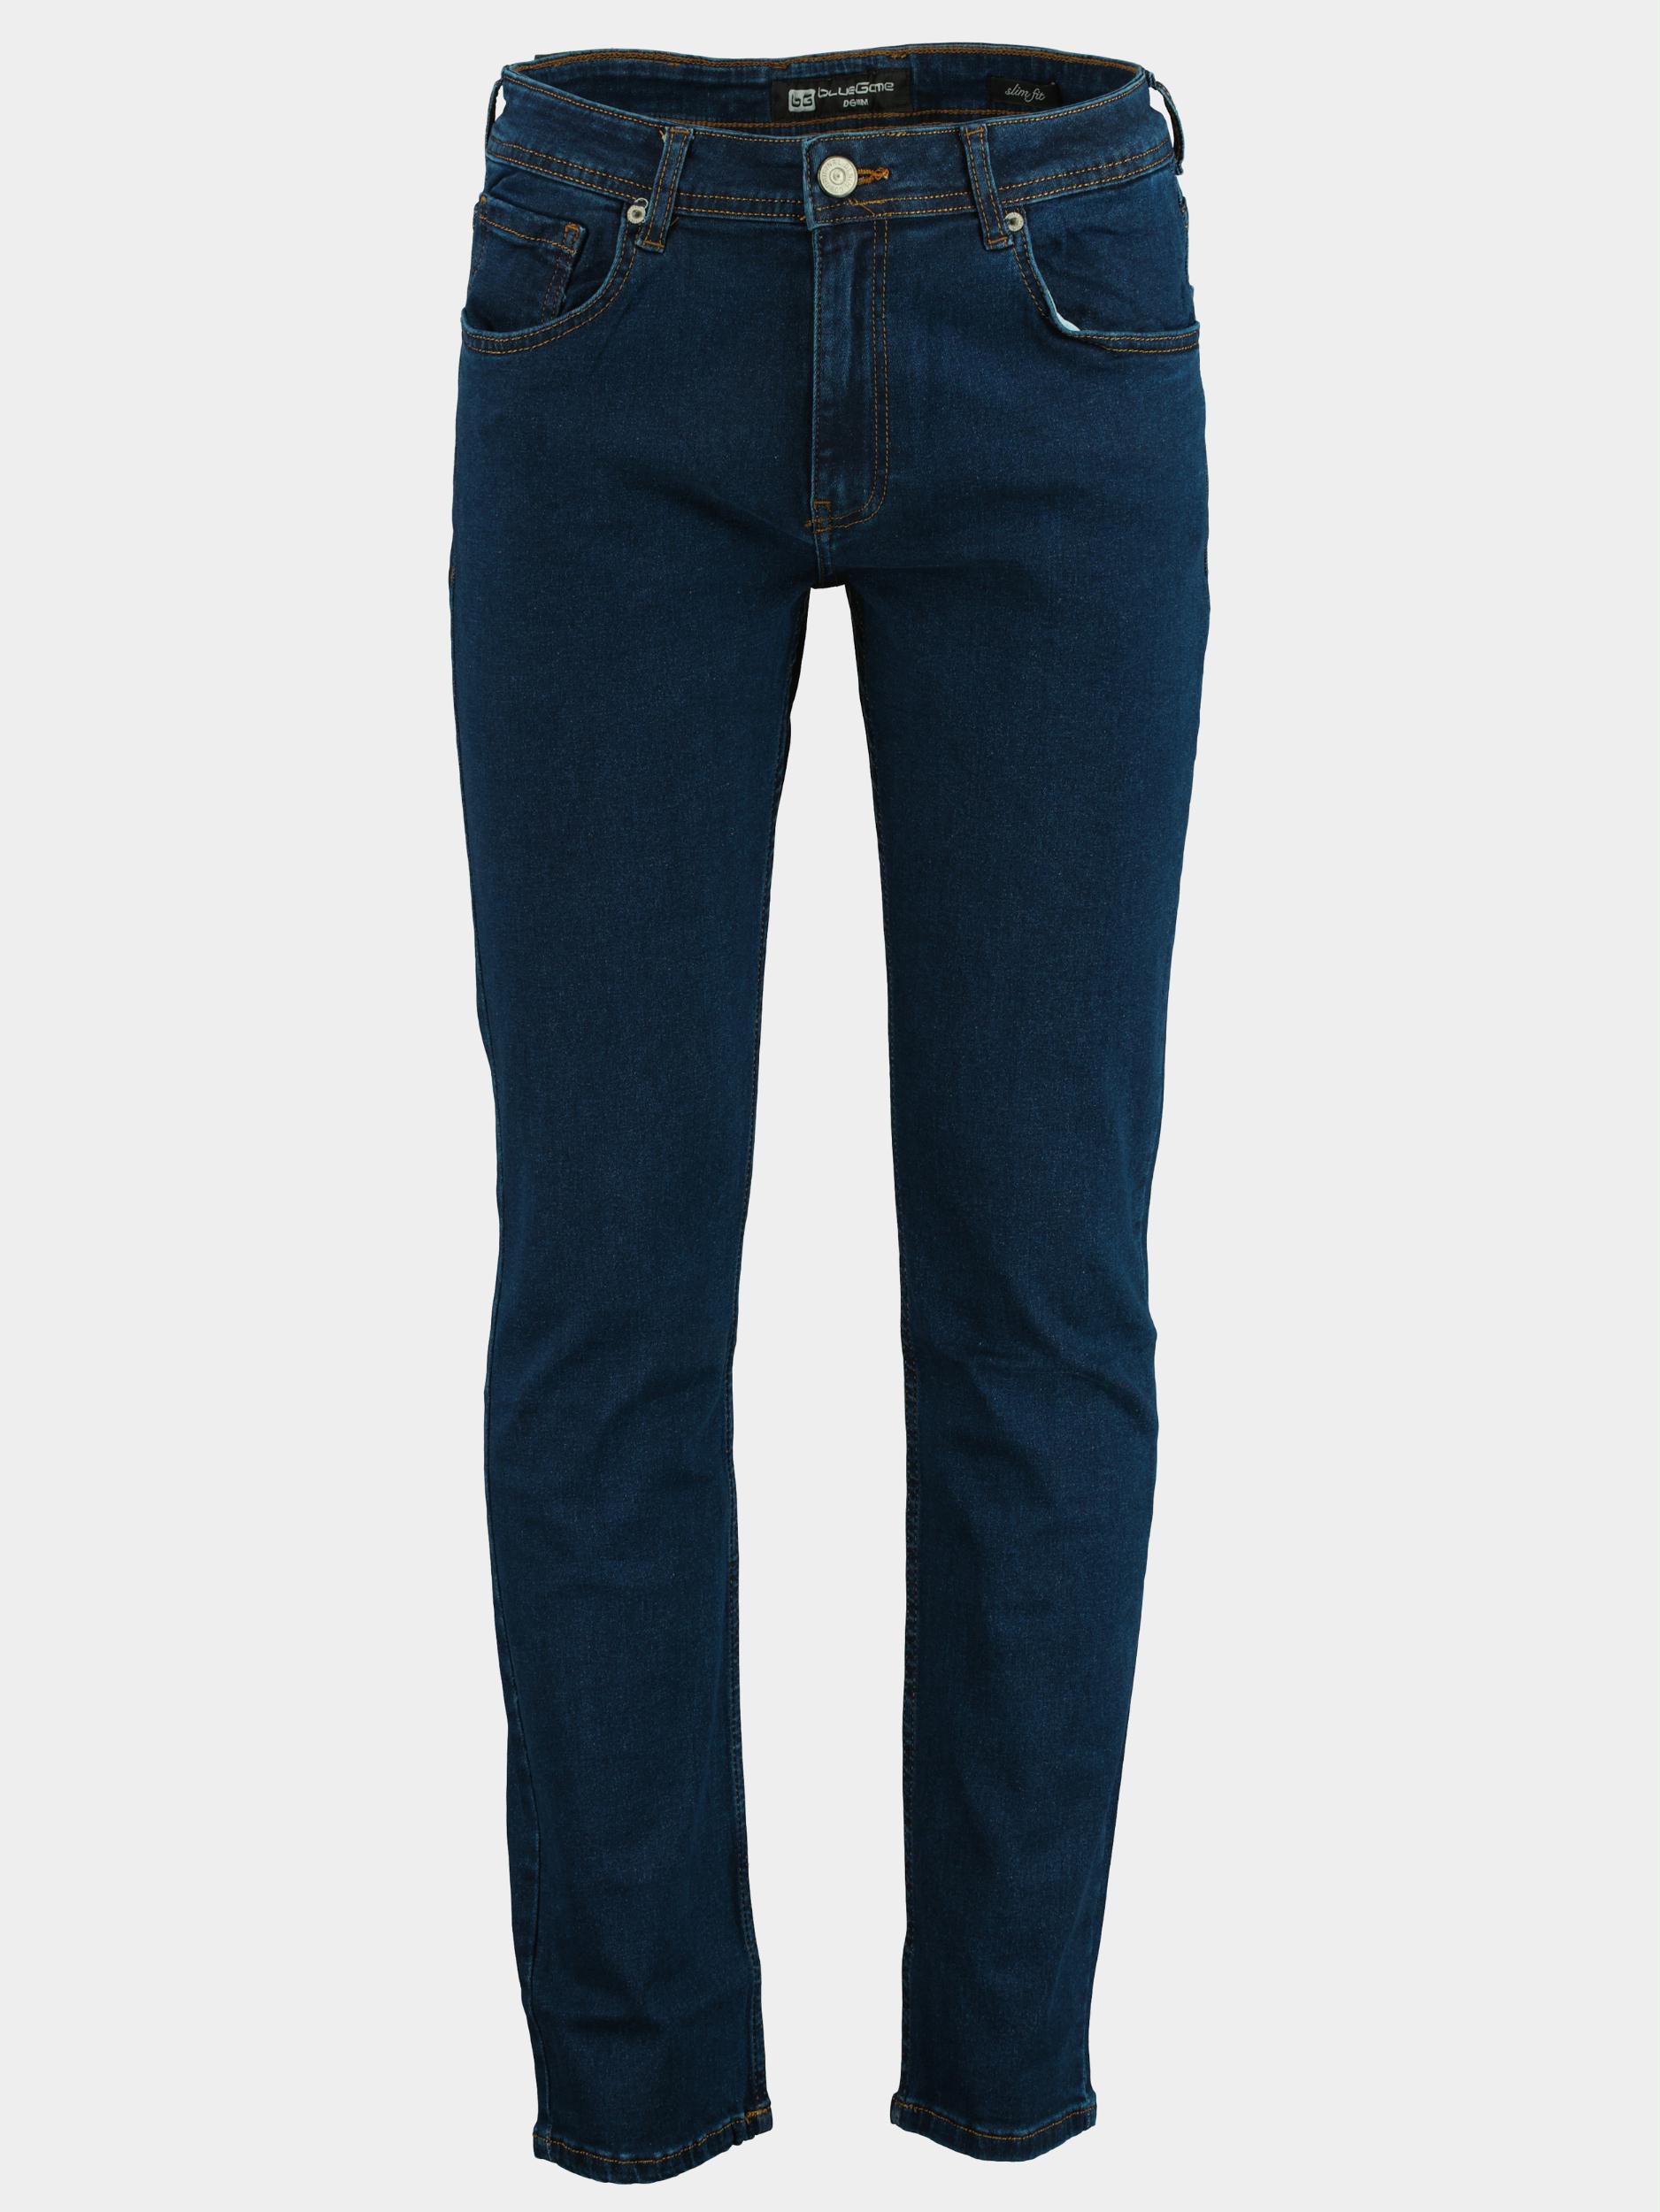 Afbeelding van Blue Game 5-pocket jeans 9001/dark blue